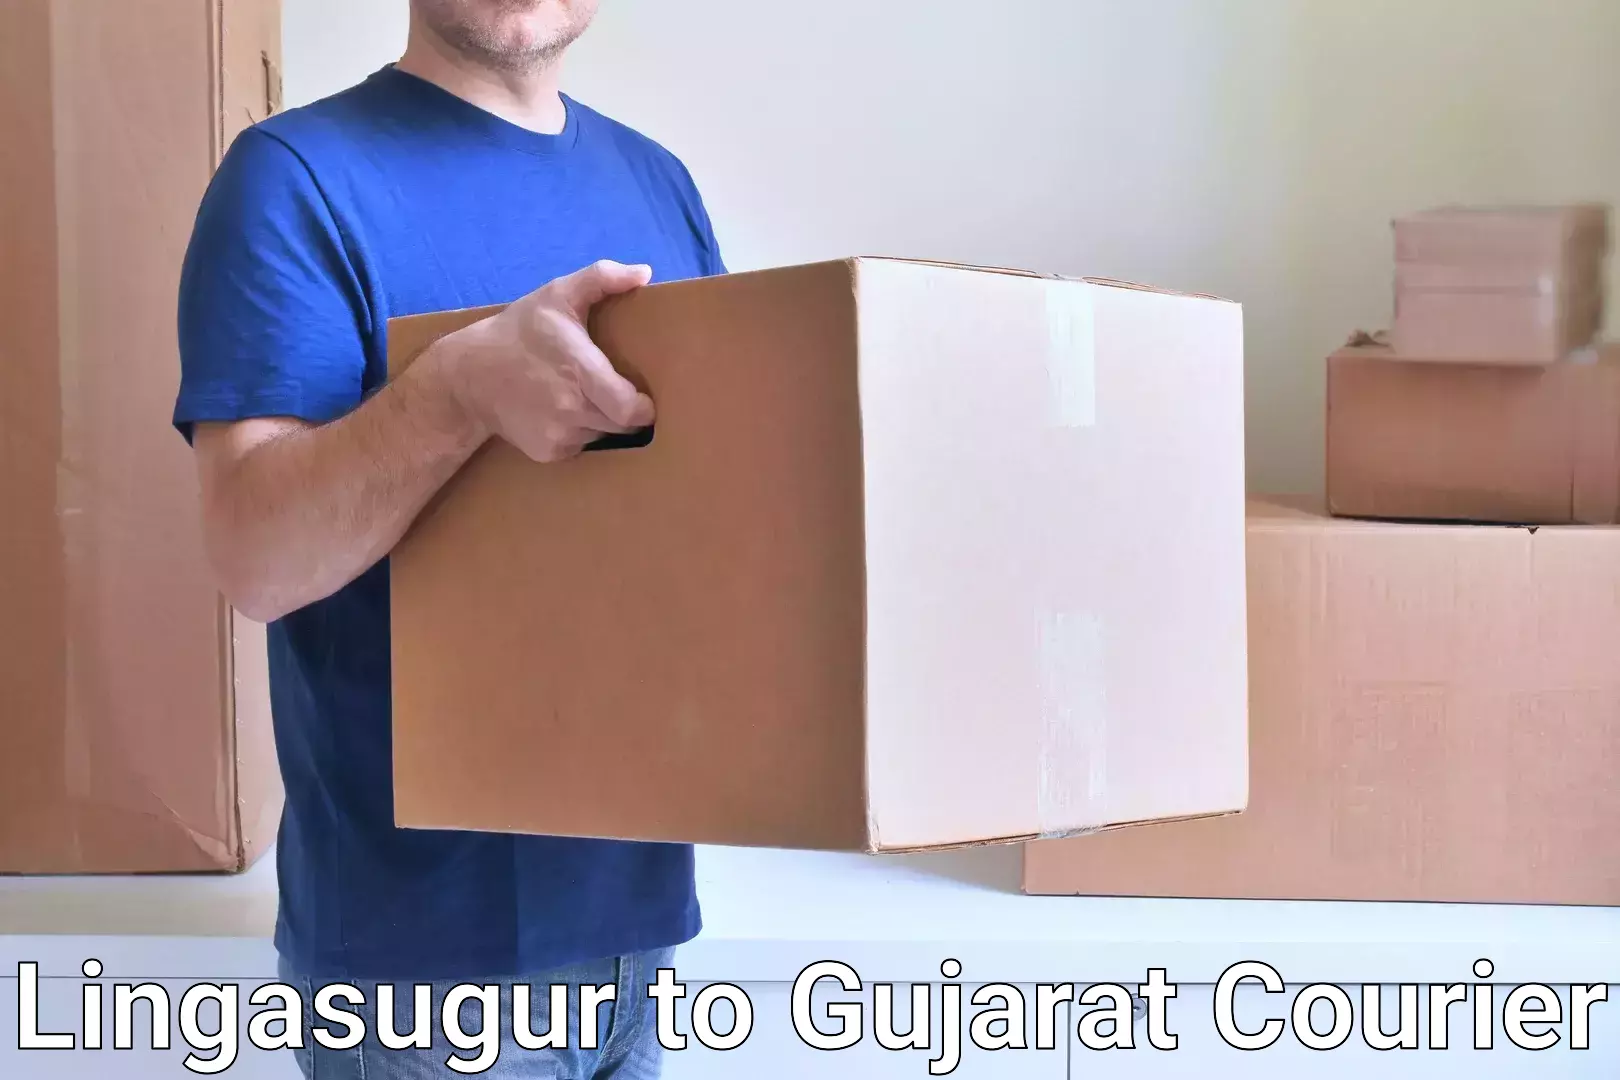 Efficient parcel service Lingasugur to Gujarat